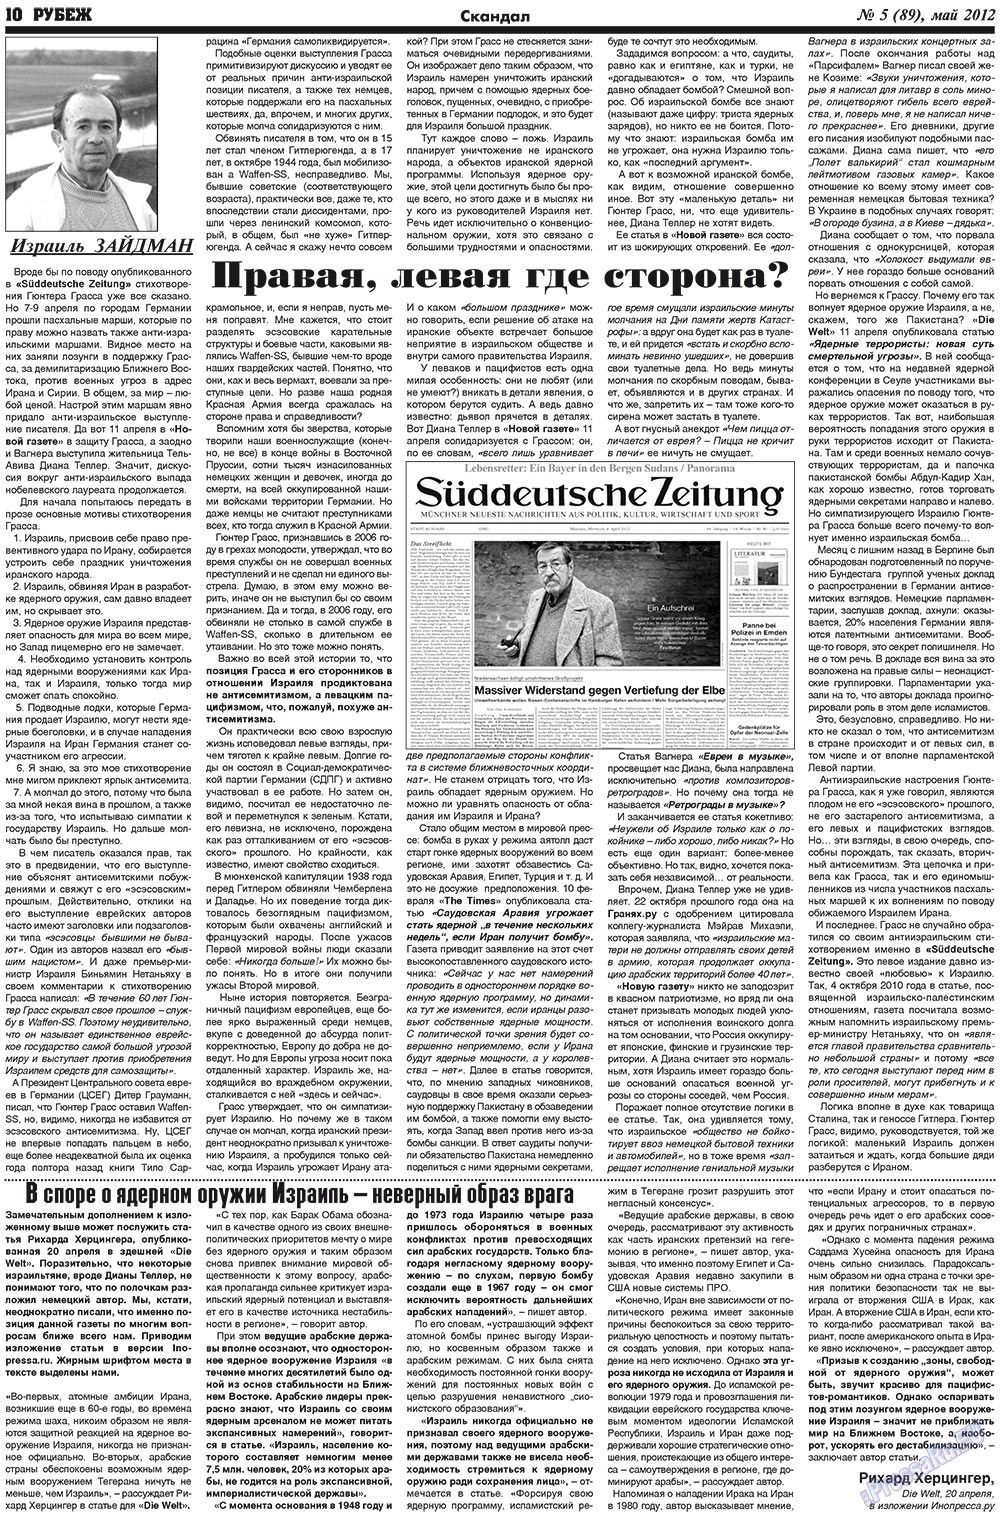 Рубеж (газета). 2012 год, номер 5, стр. 10